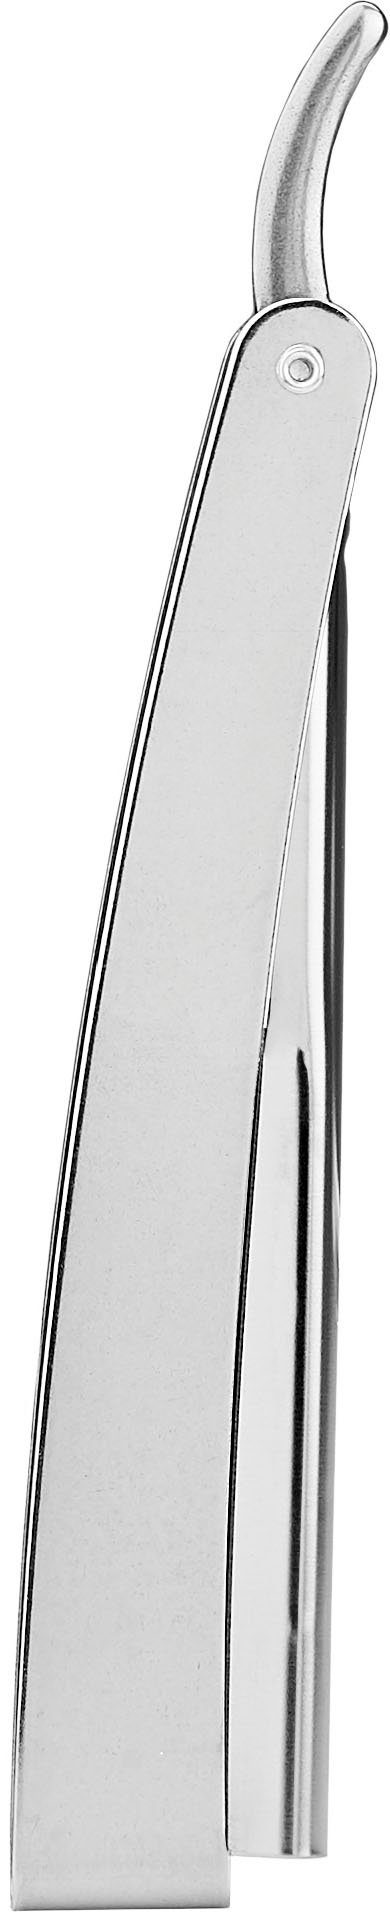 praktischem silberfarben, Rasiermesser Rasiermesser Klappgriff FRIPAC 1955 mit